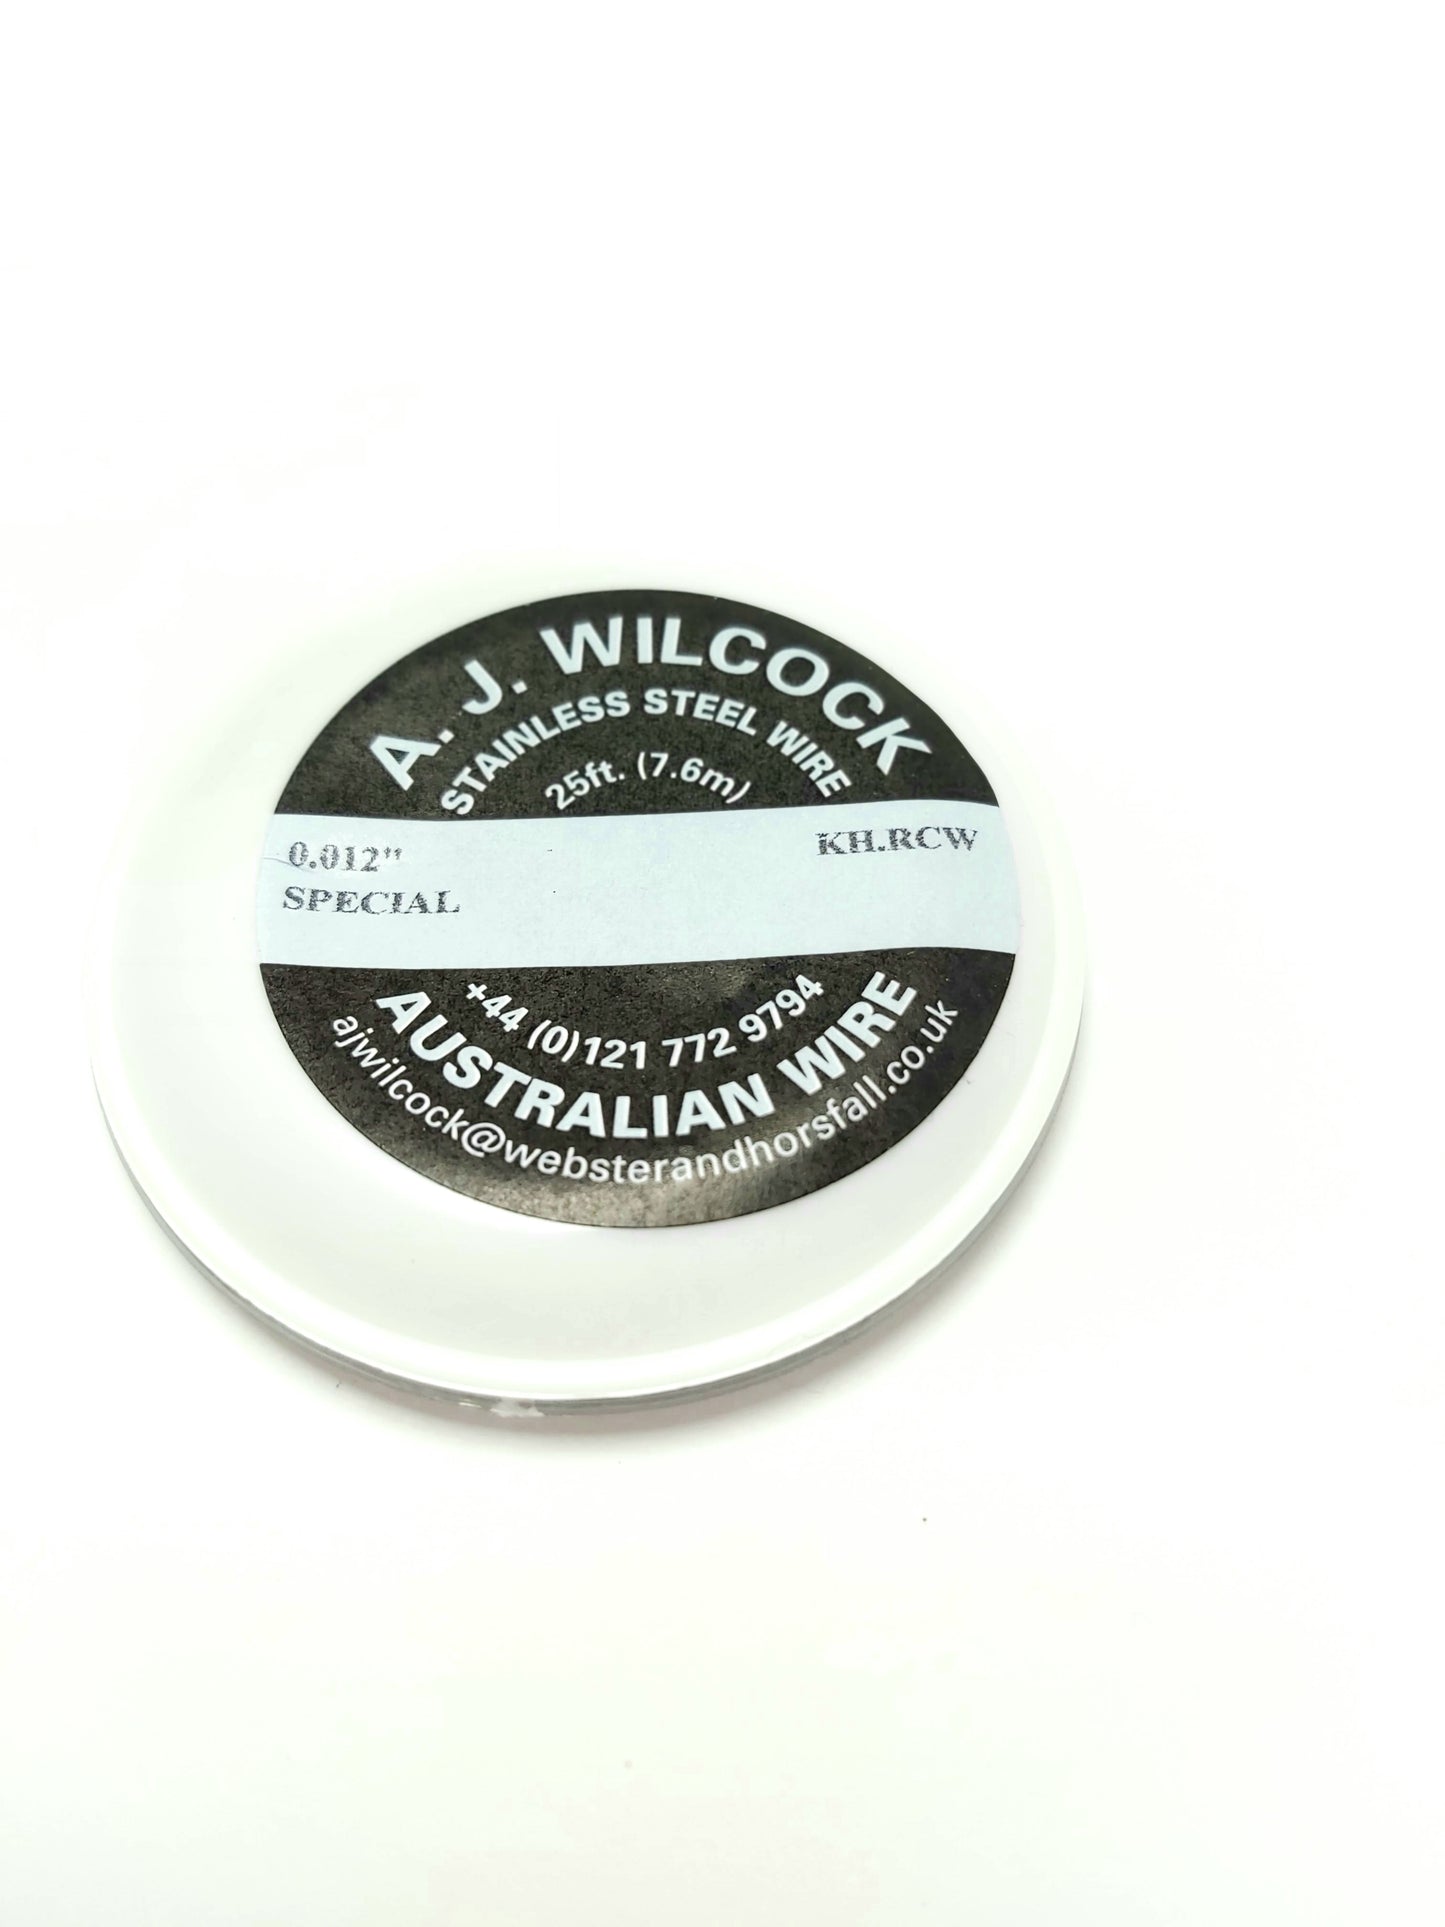 Australian Wire A.J. Wilcock